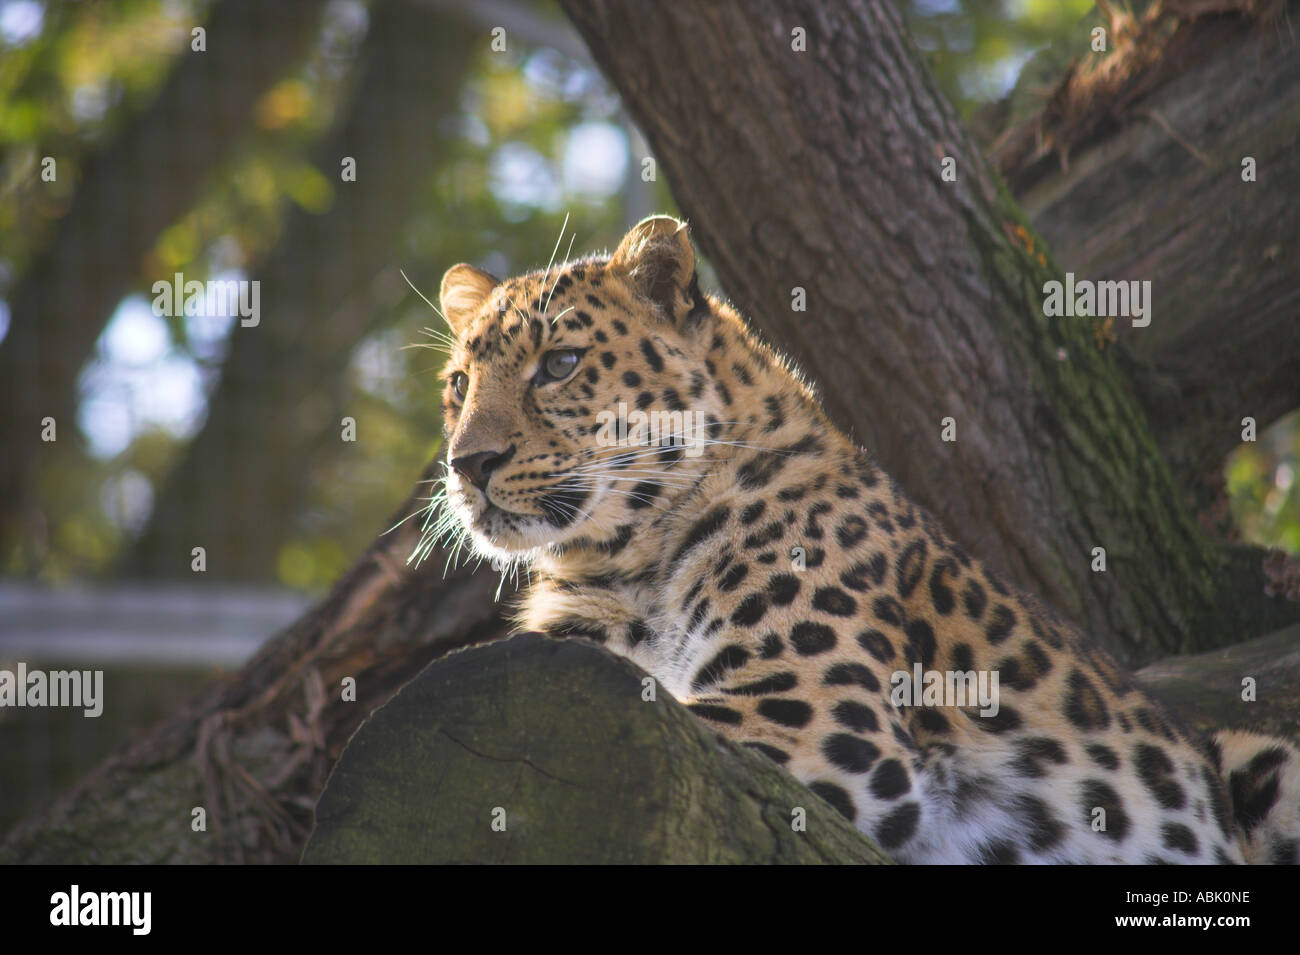 La pantera o leopardo Amur mirando fijamente desde su árbol Foto de stock